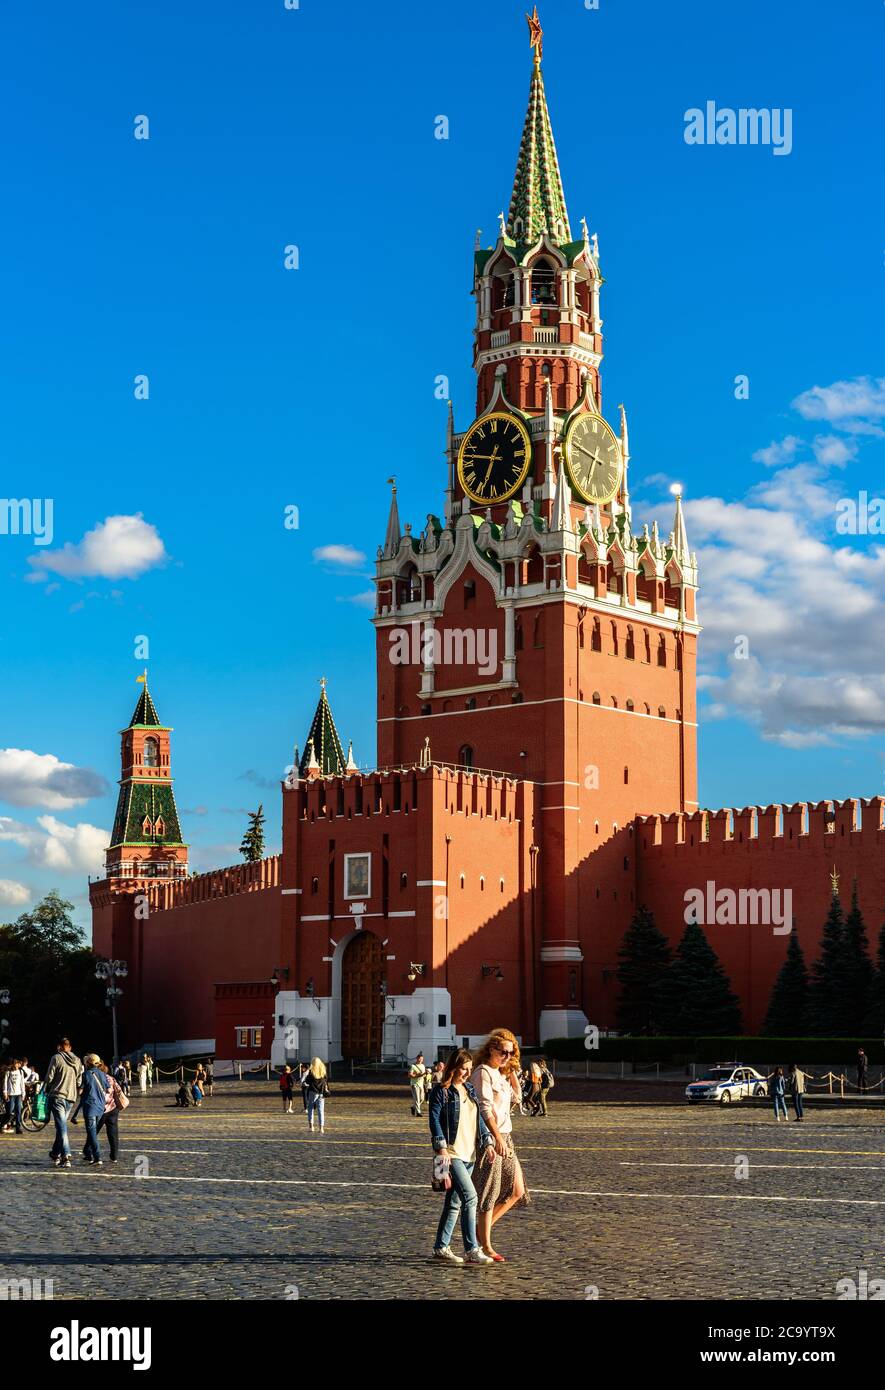 Moskau - 23. Juli 2020: Kreml auf dem Roten Platz in Moskau, Russland. Ist berühmte Touristenattraktion von Moskau, Top-russisches Wahrzeichen. Die Leute gehen daneben Stockfoto